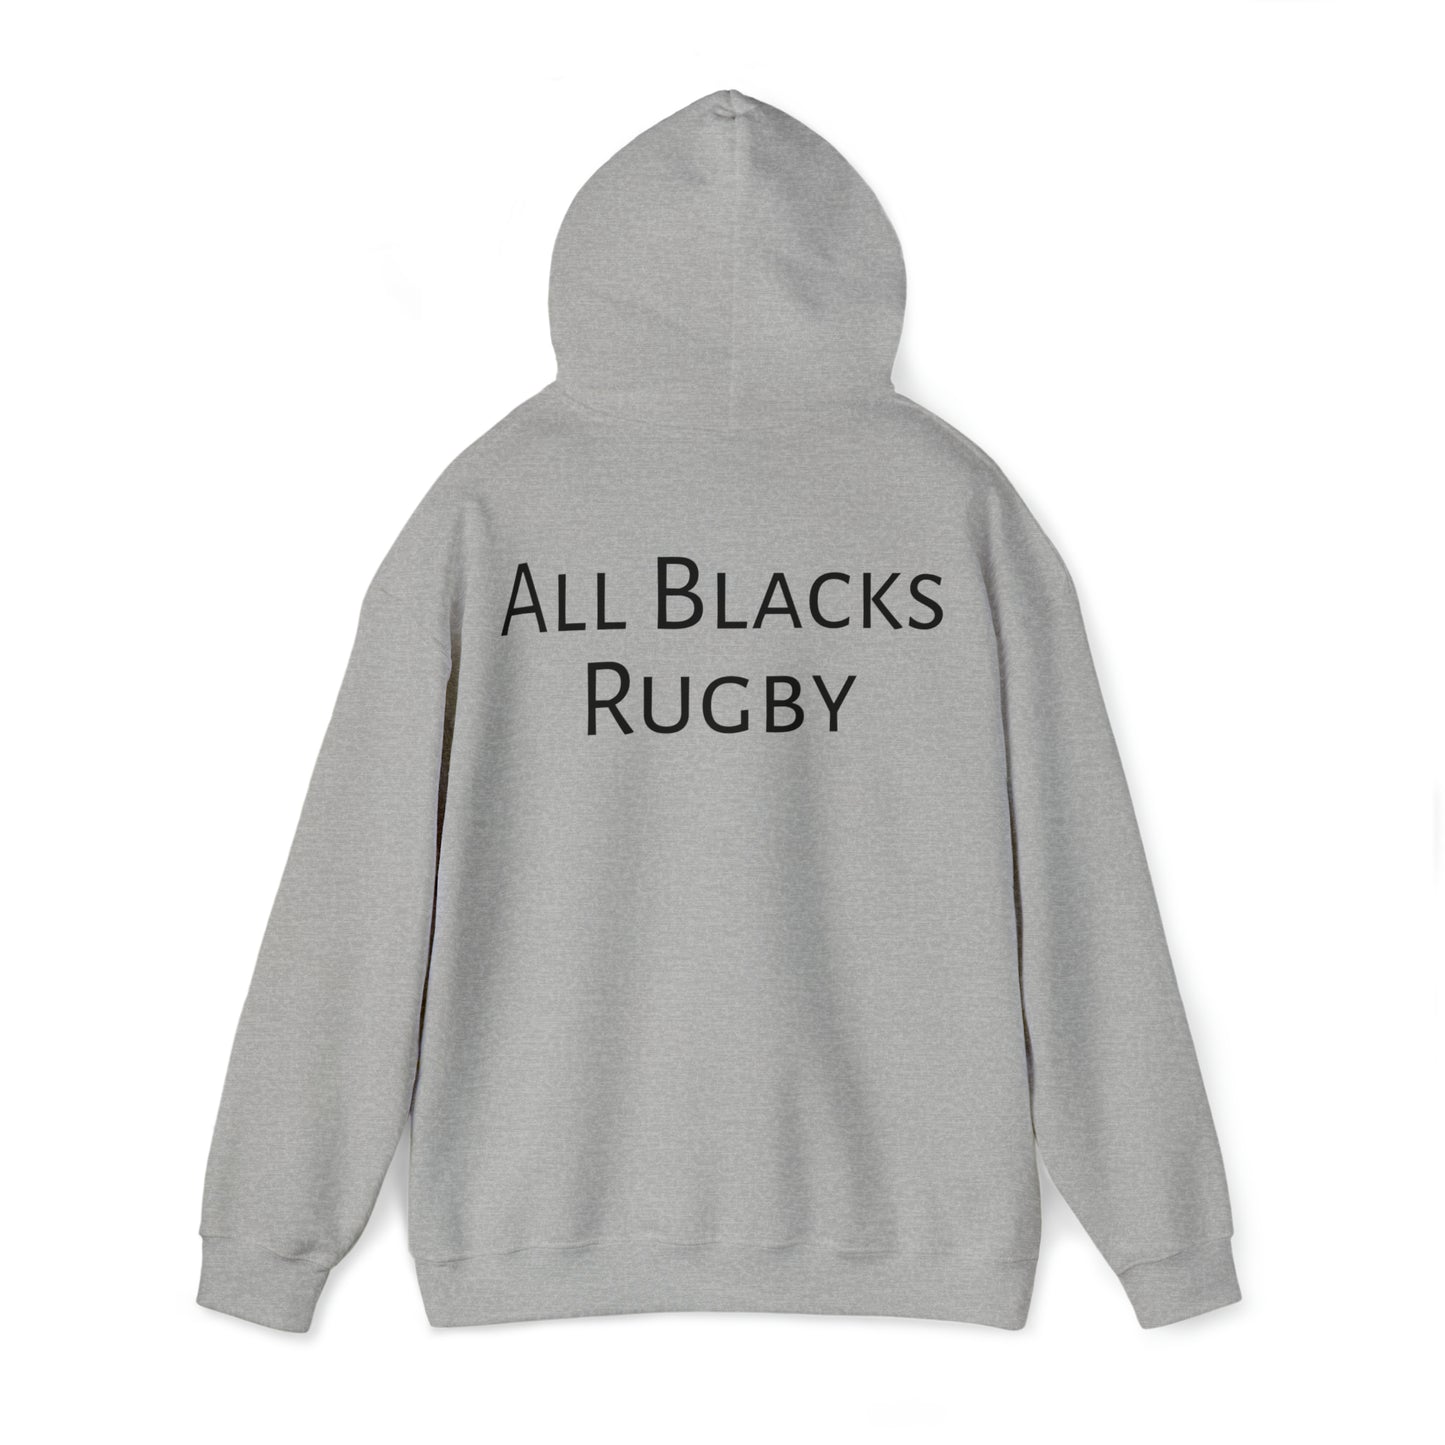 All Blacks Winners Photoshoot - light hoodies